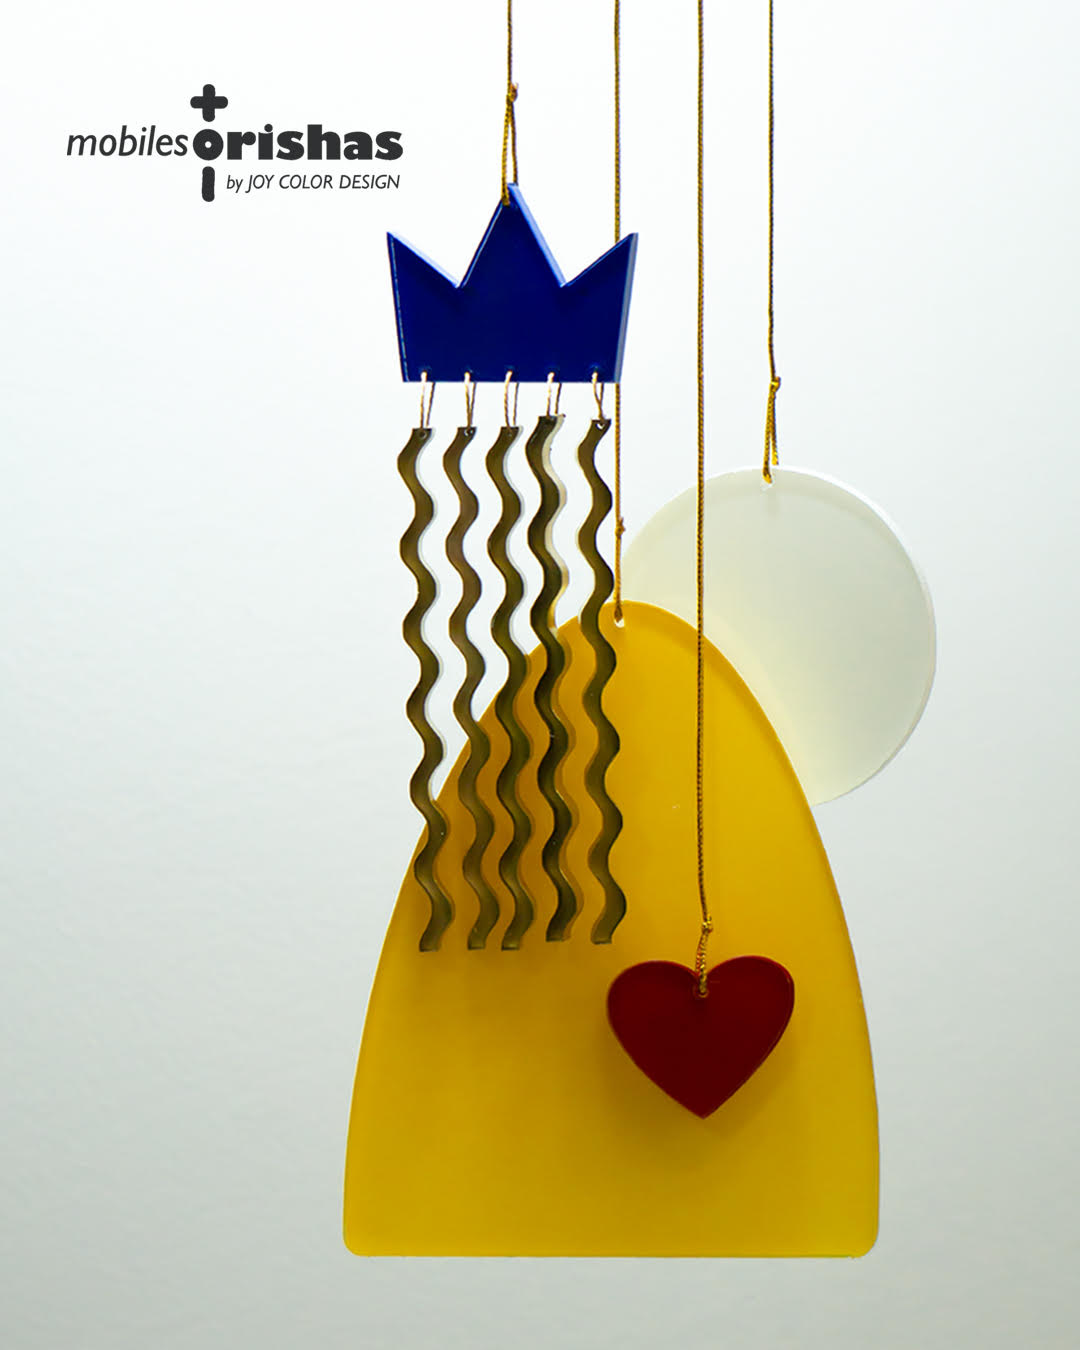 Mobiles Orishas. Nueva colección de Yamile Salomón Infante, diseñadora y creadora de Joy Color.